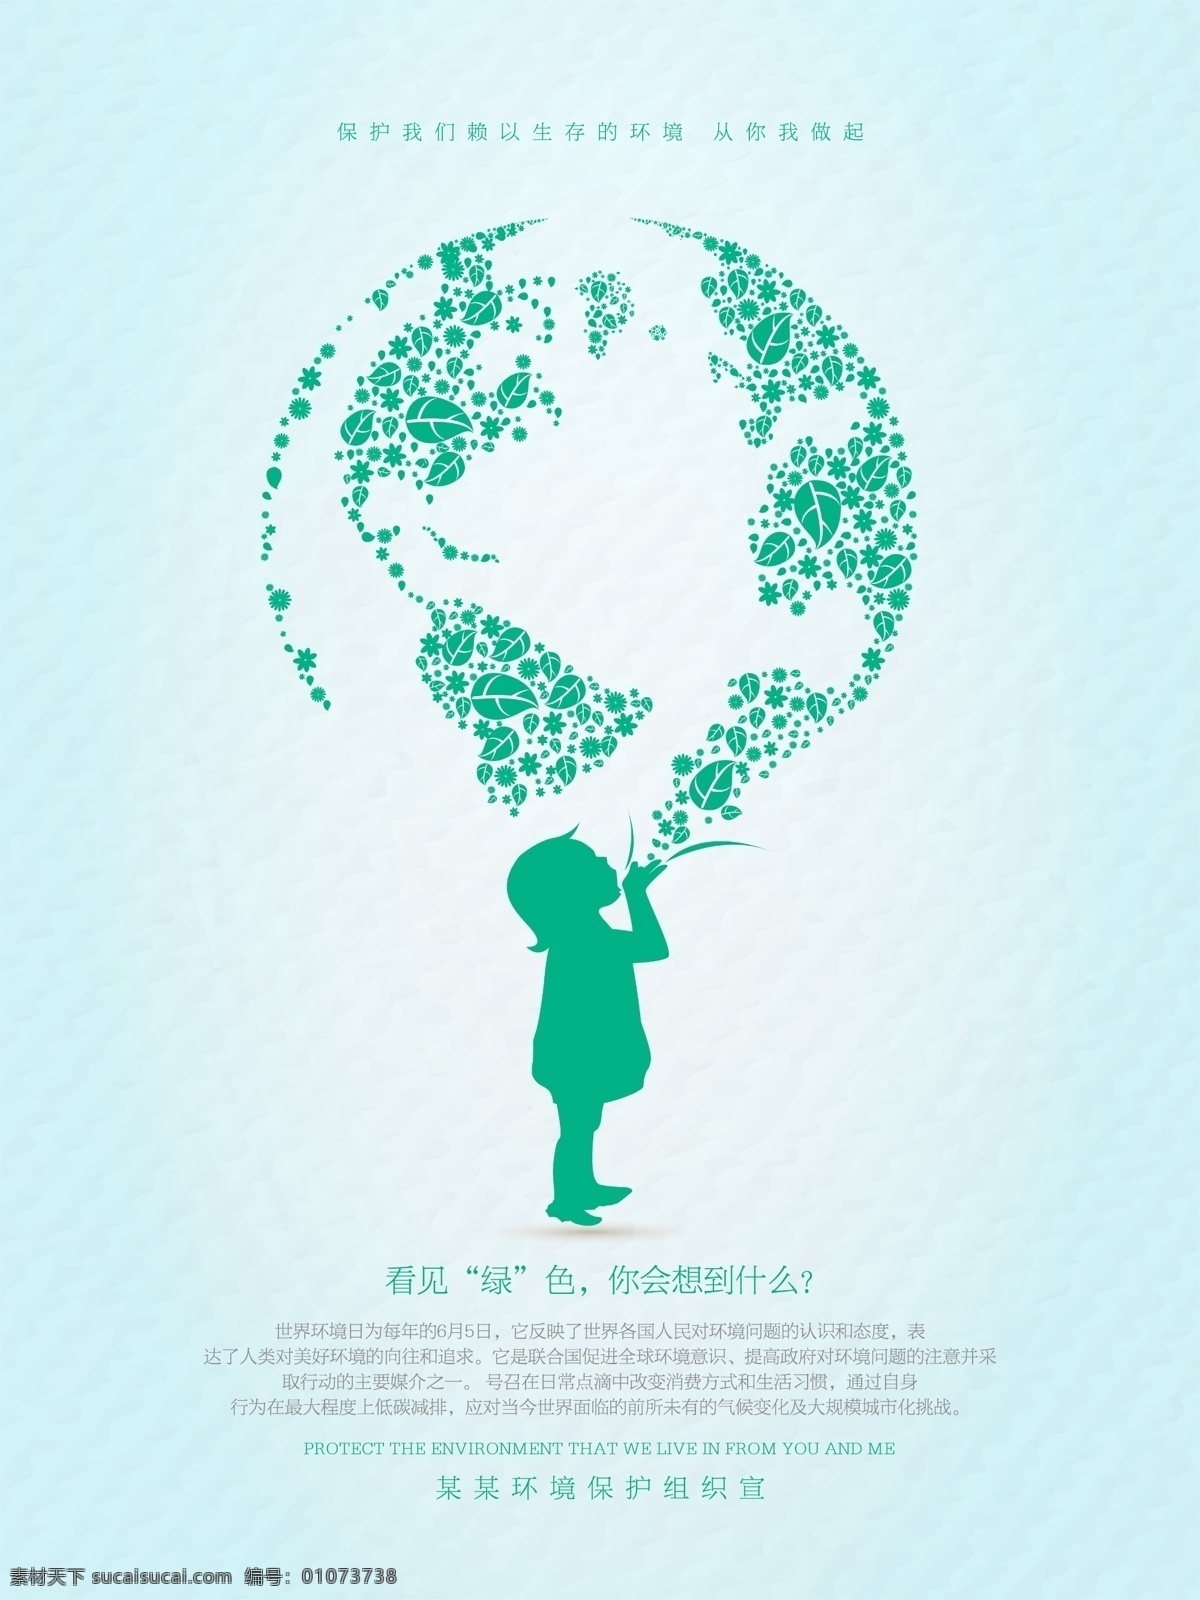 看见 绿色 保护 生态环境 公益 海报 世界环境日 6月5日 环境日 保护环境 世界 环境保护 日 国际环境日 保护地球 环保 低碳 生态保护 地球 环境